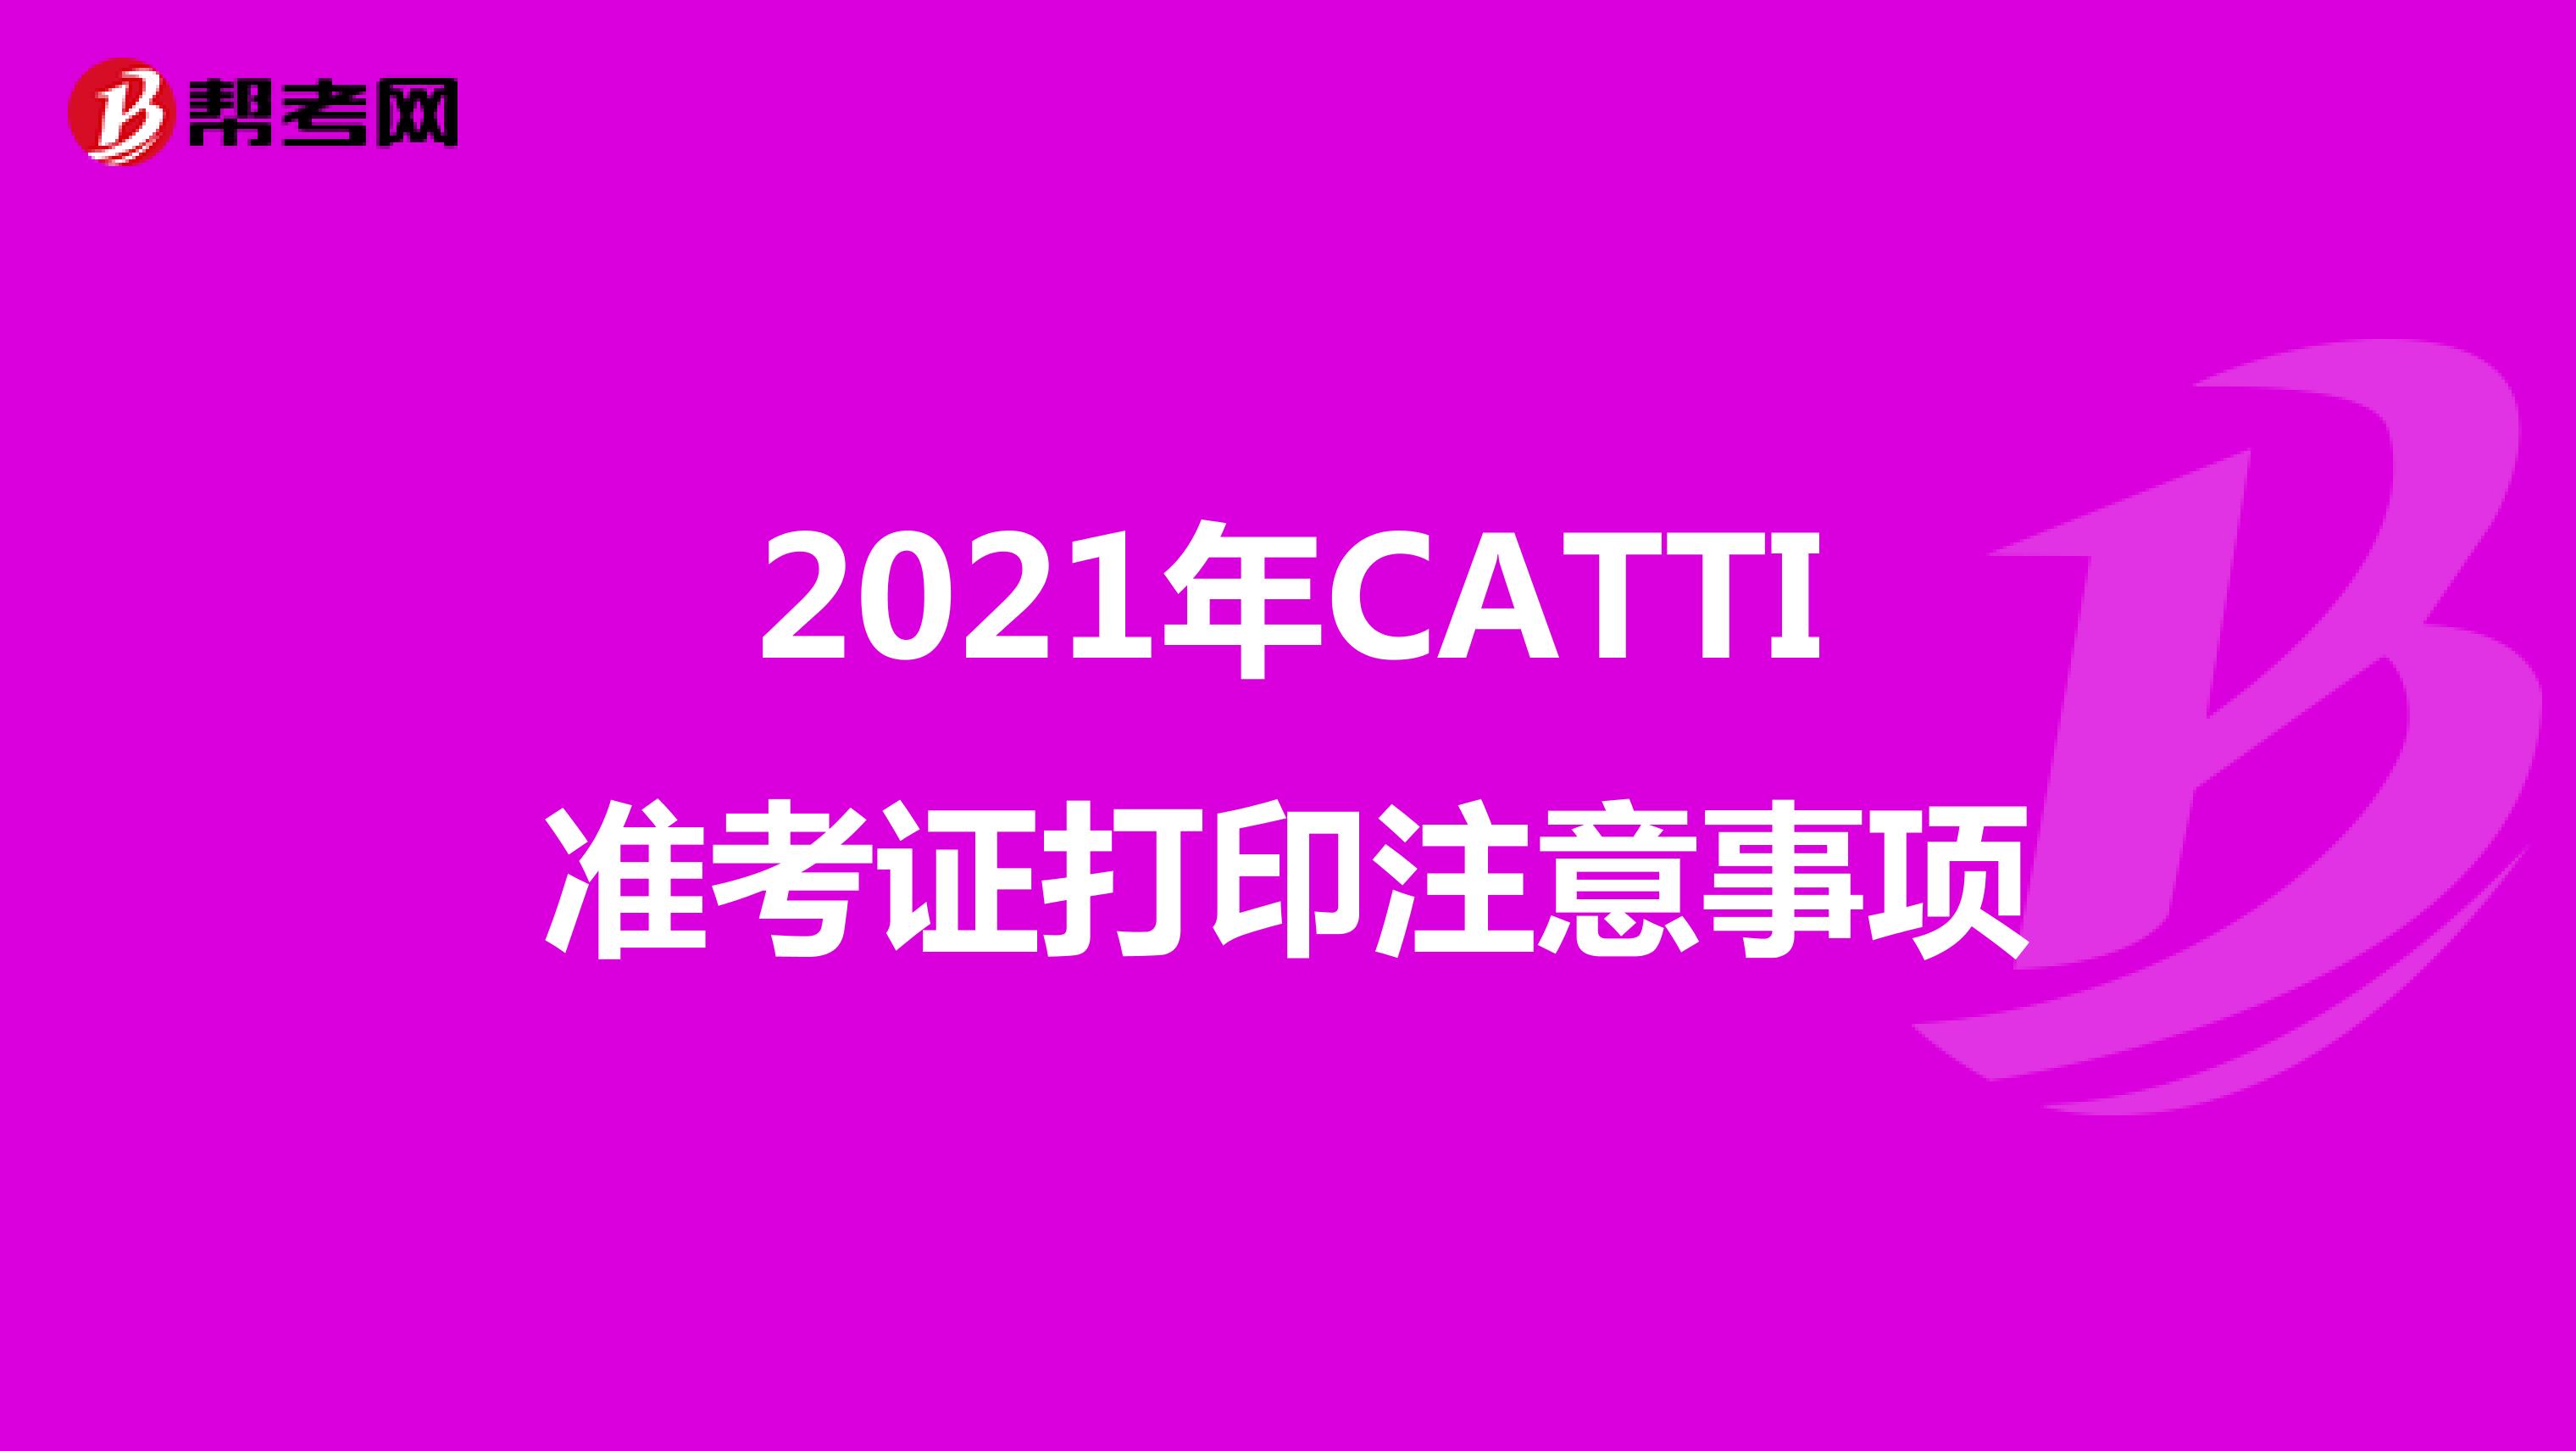 2021年CATTI准考证打印注意事项